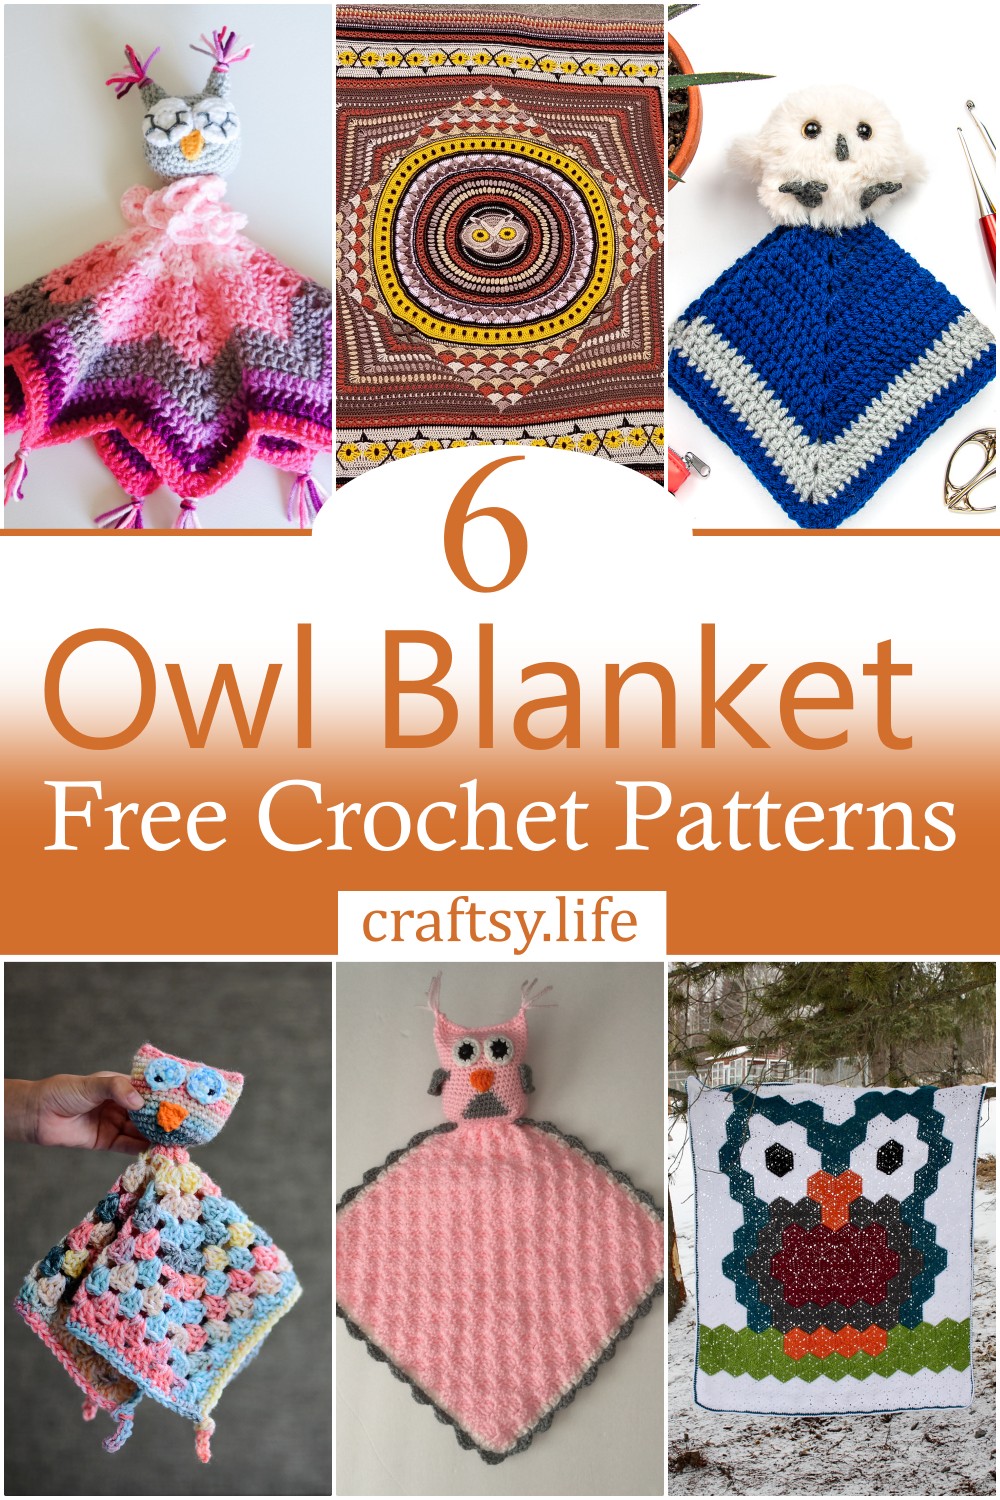 Free Crochet Owl Blanket Patterns 1